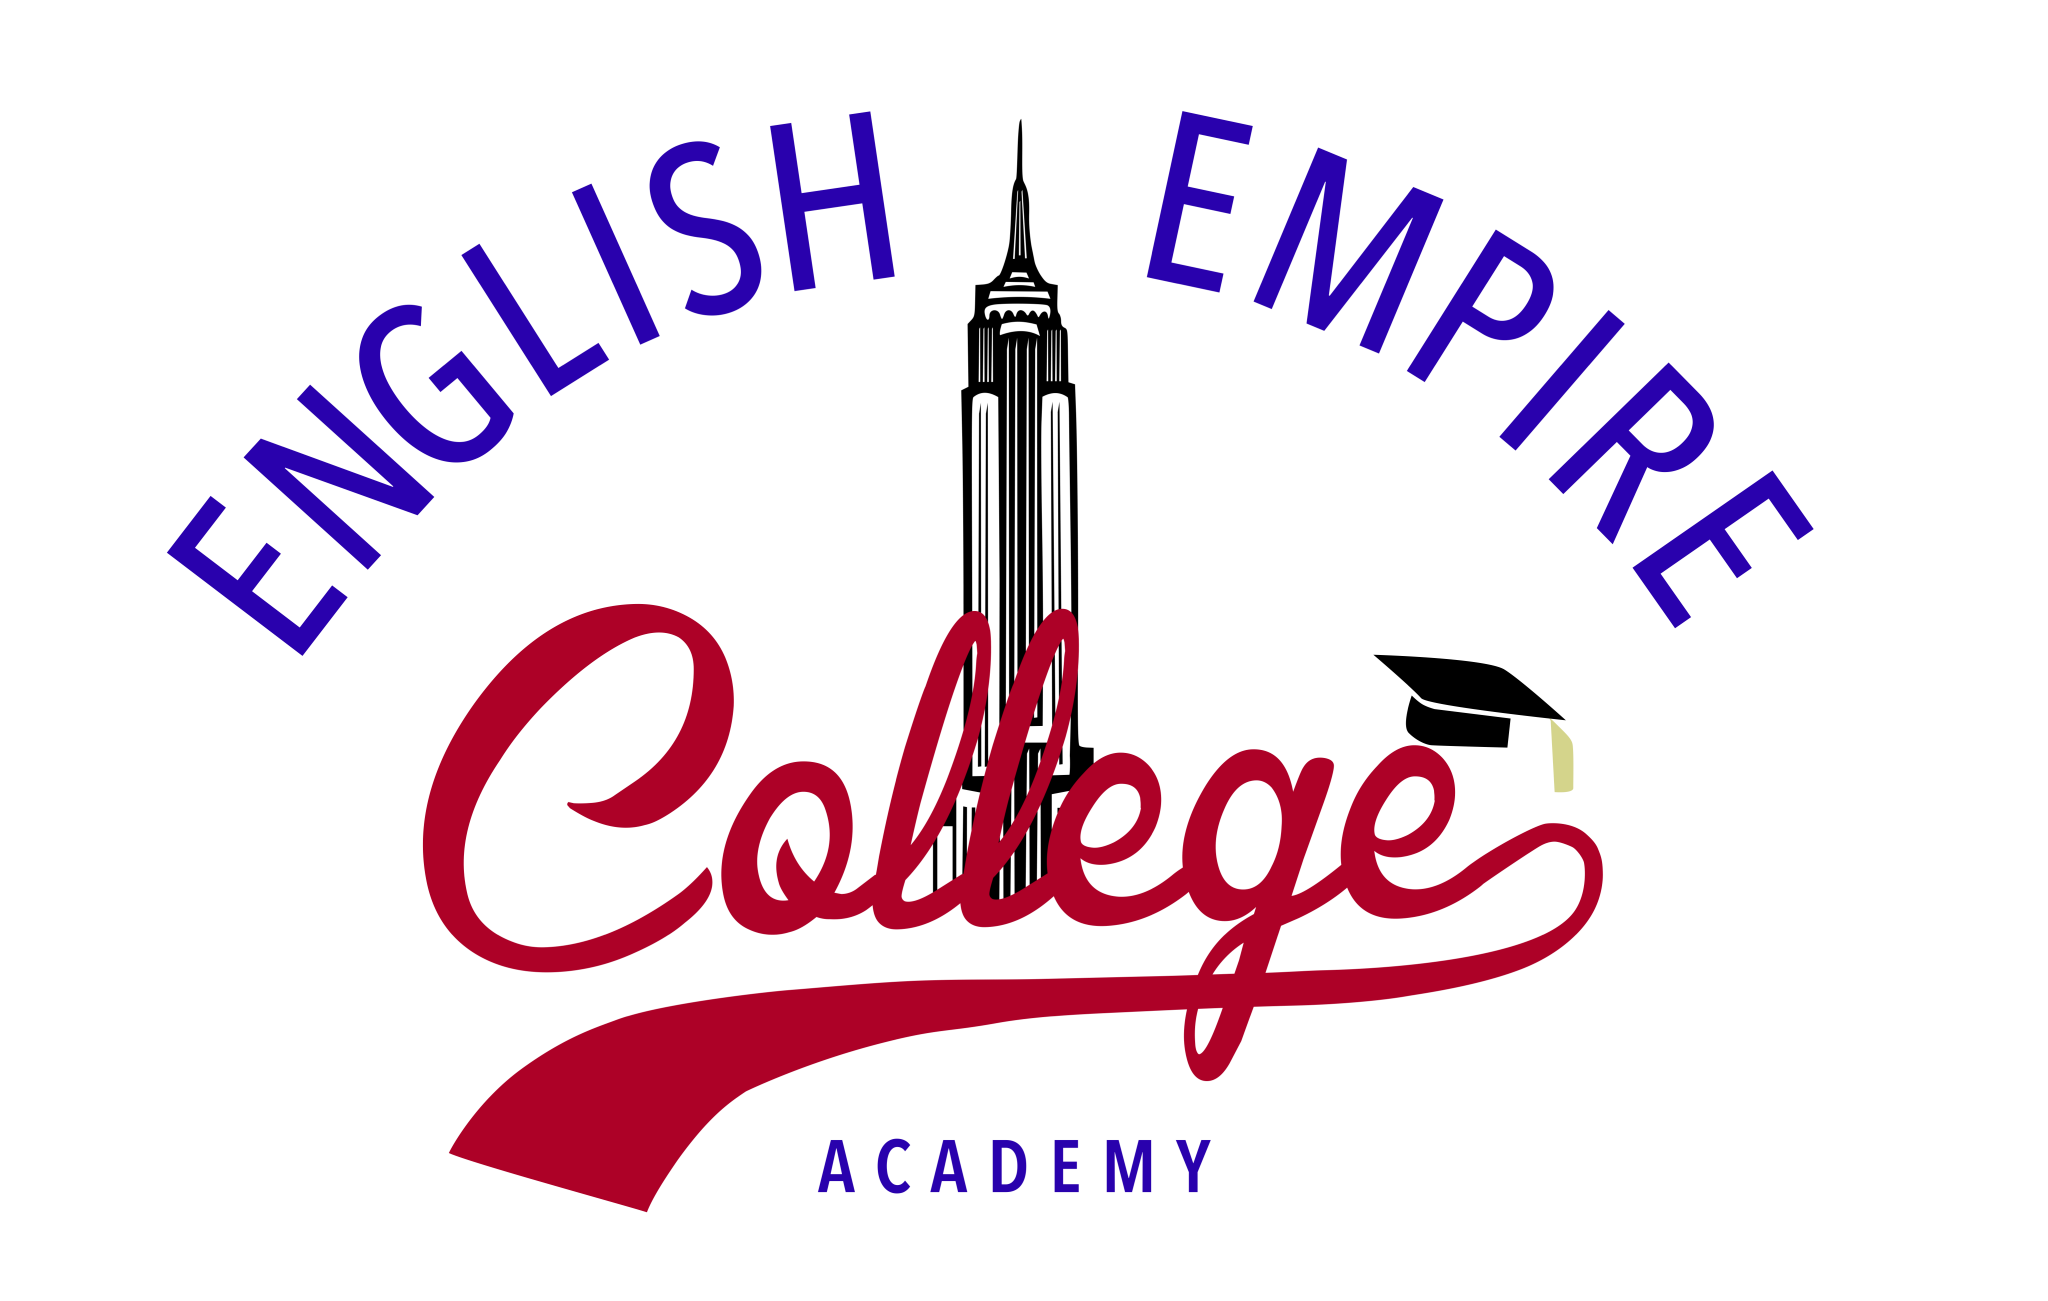 English Empire College